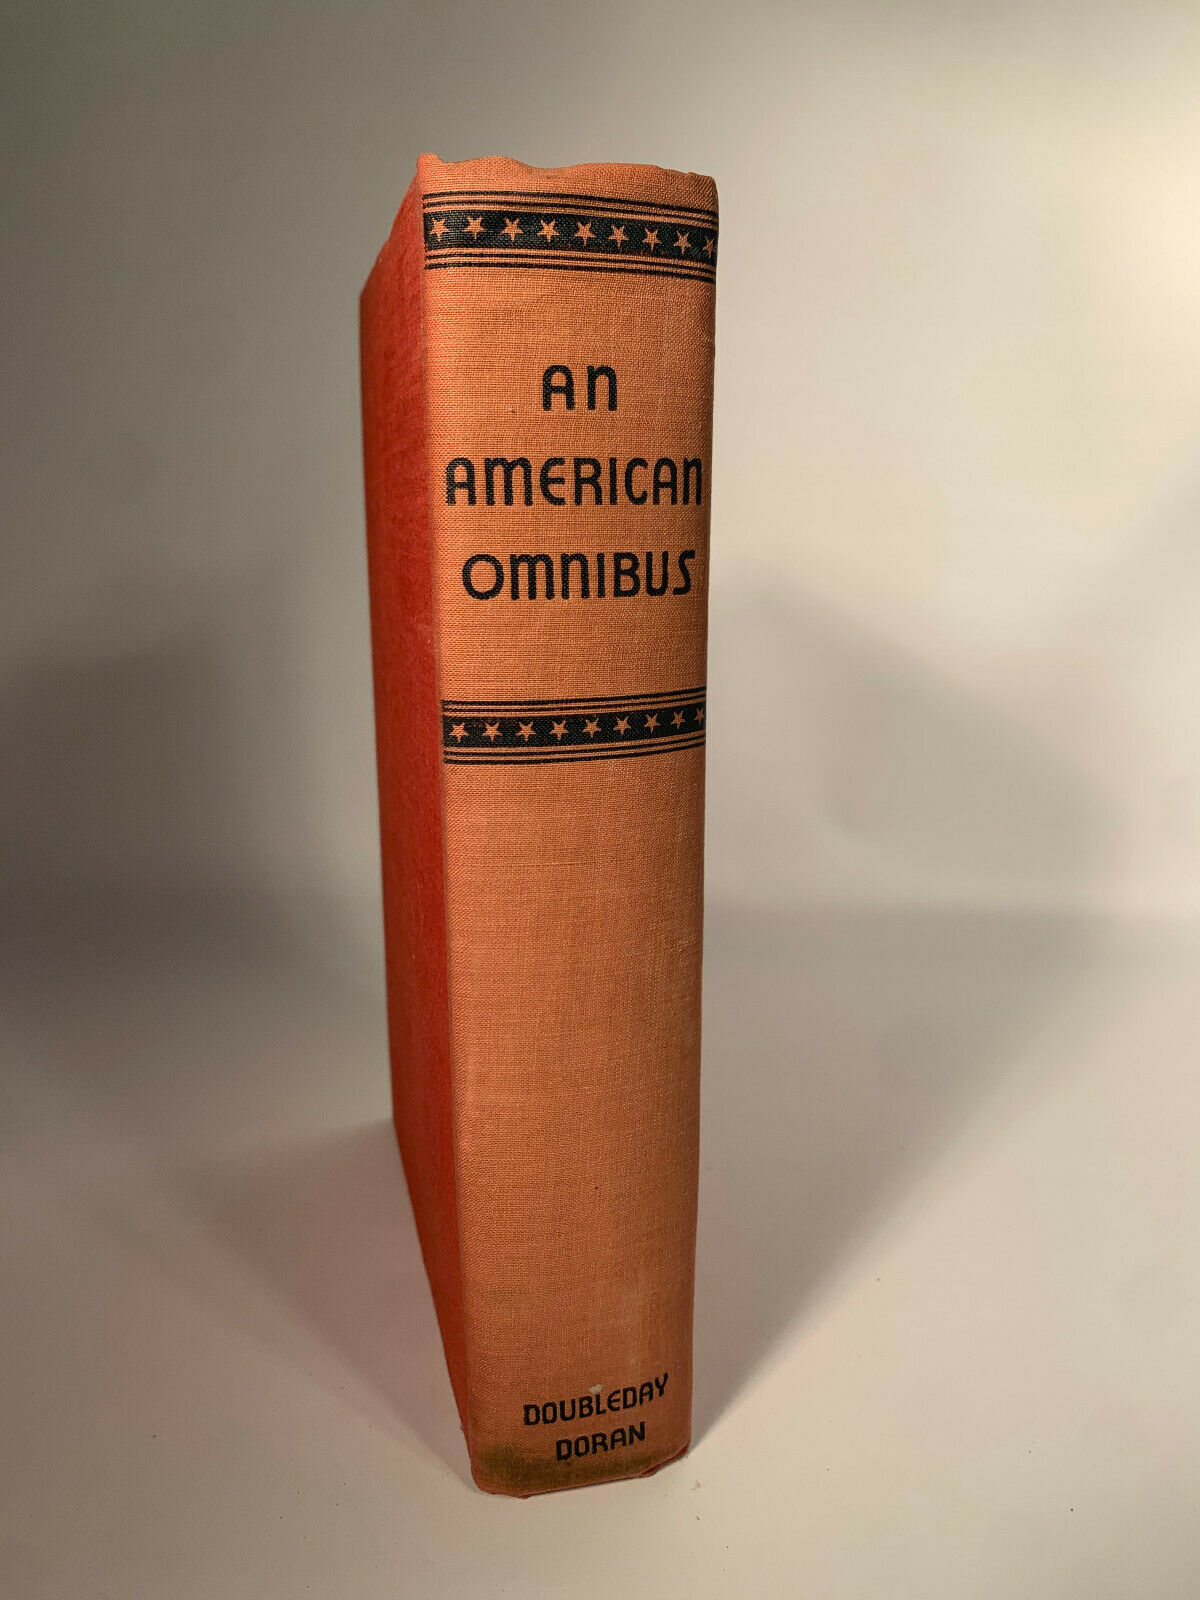 The American Omnibus intro by Carl Von Doren 1933